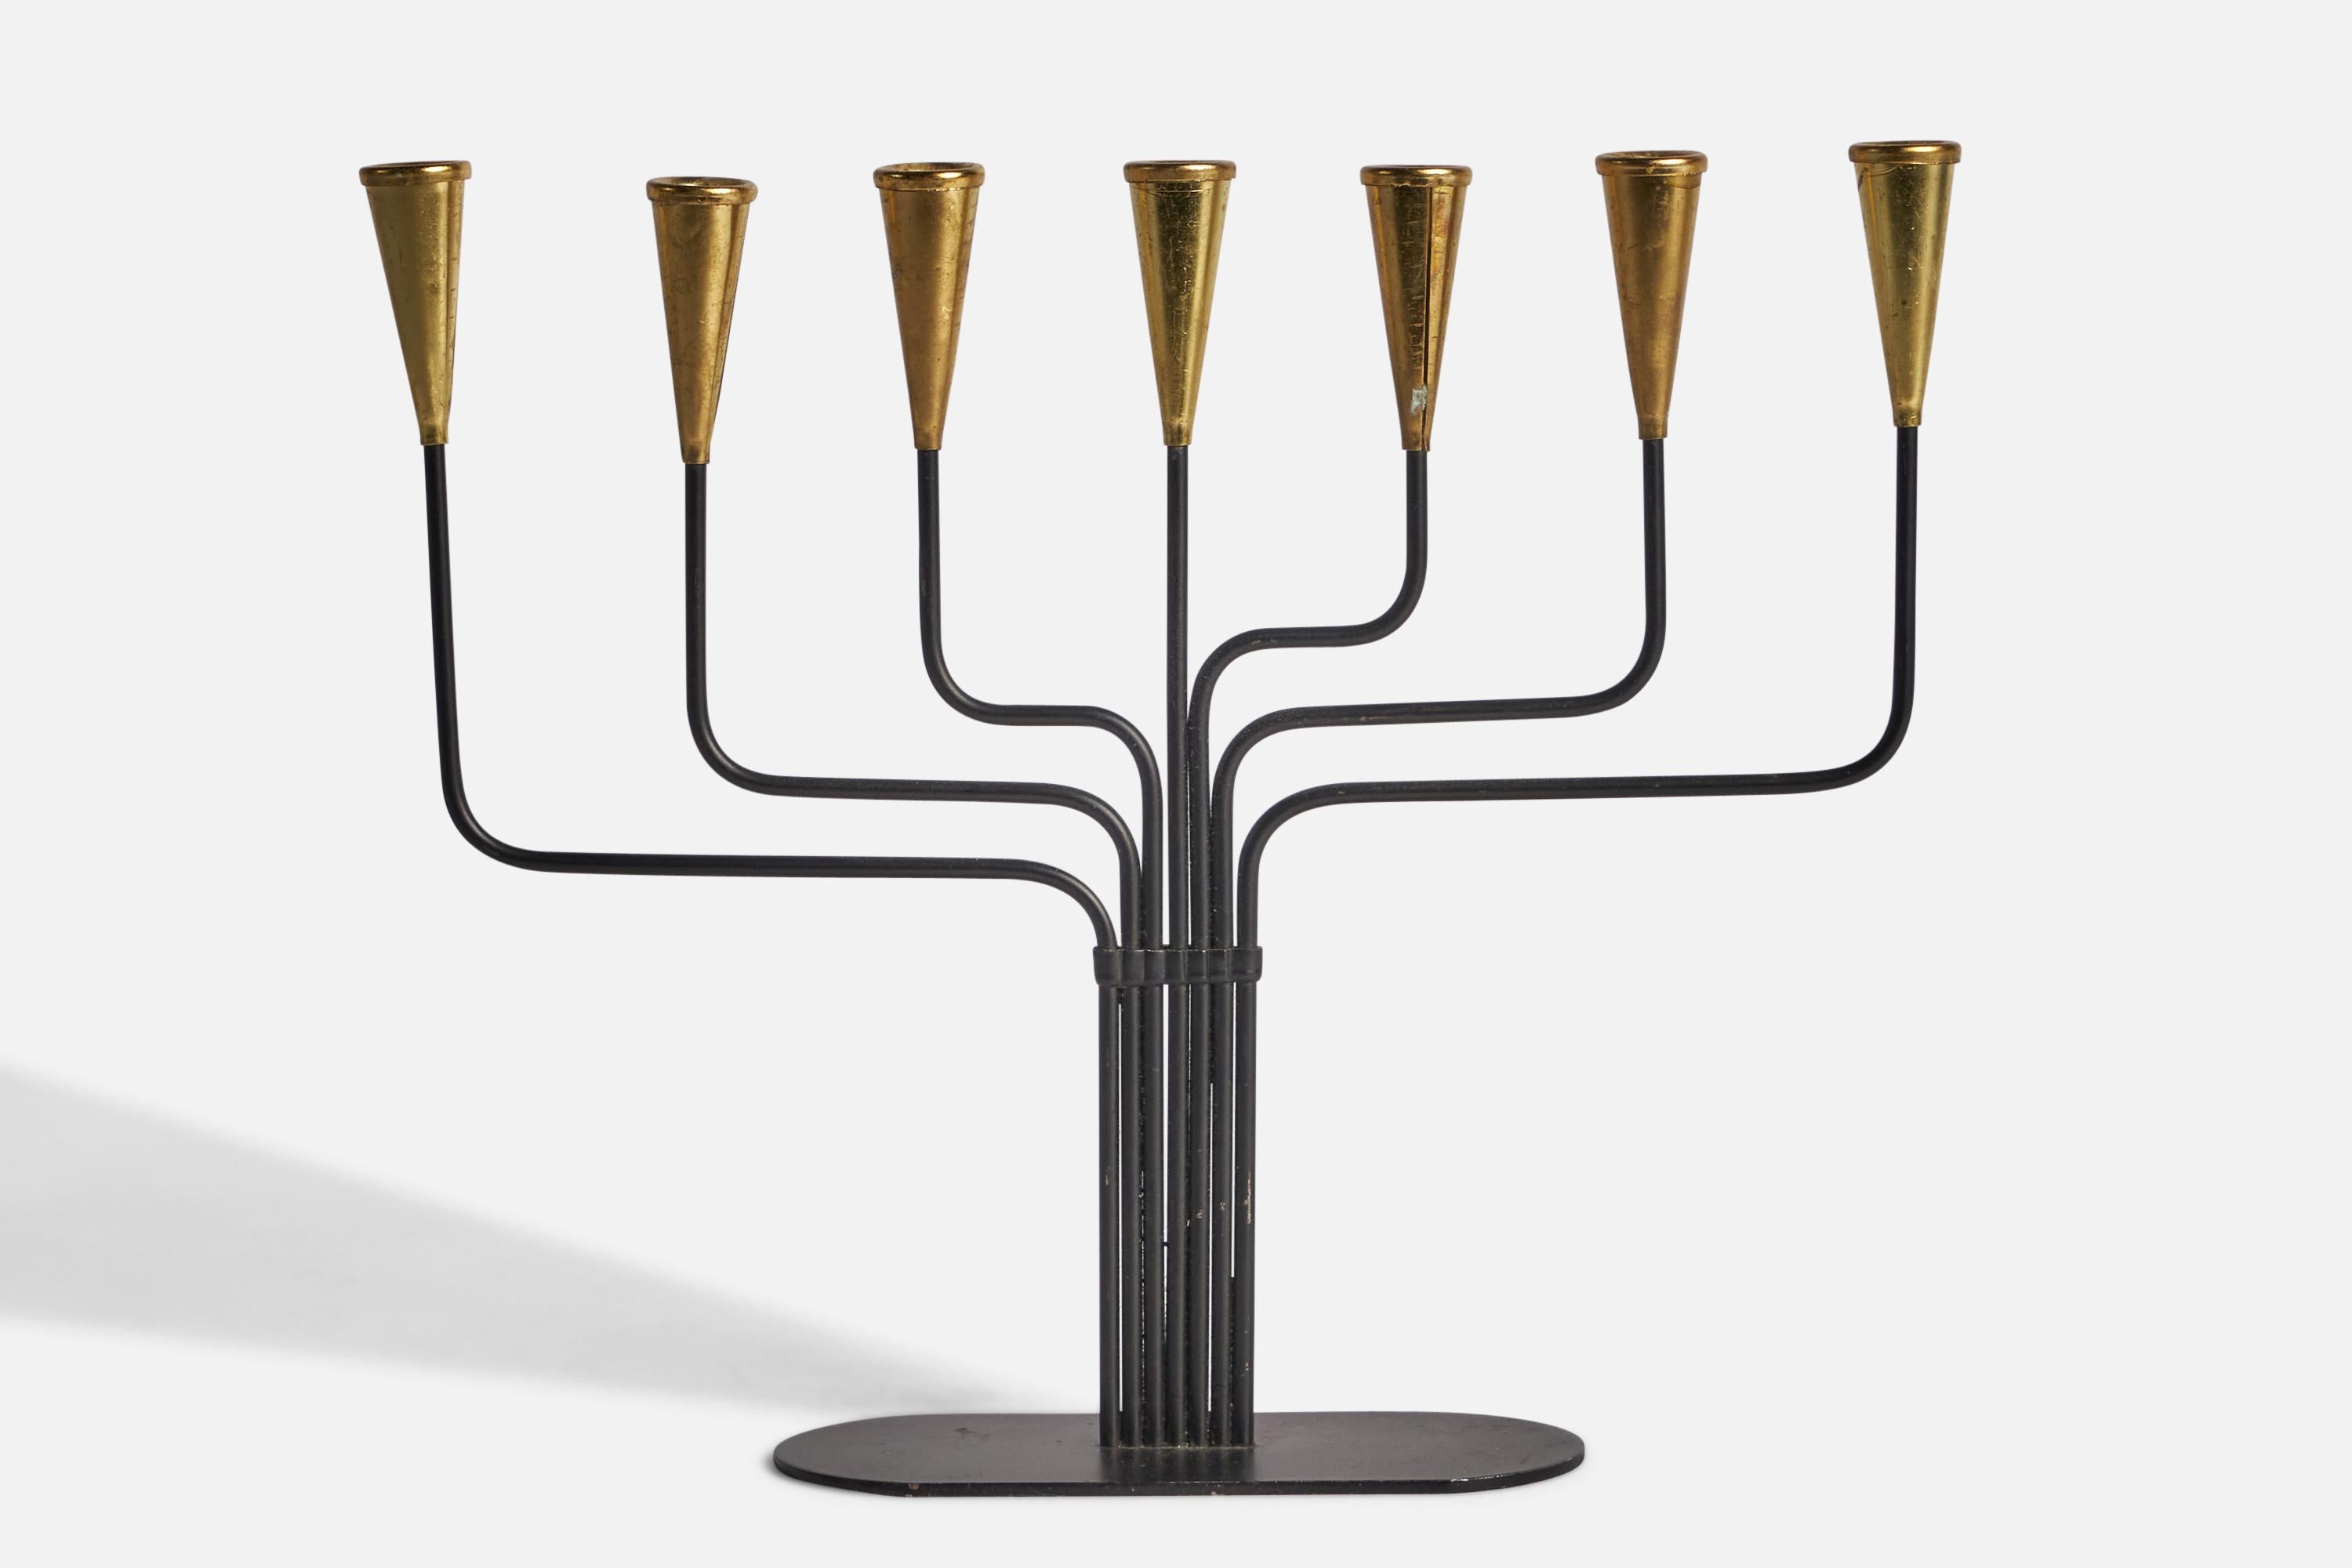 Ein Kandelaber aus Messing und Metall, entworfen von Gunnar Ander und hergestellt von Ystad-Metall, Schweden, um 1950.

Hält eine Kerze mit 0,35